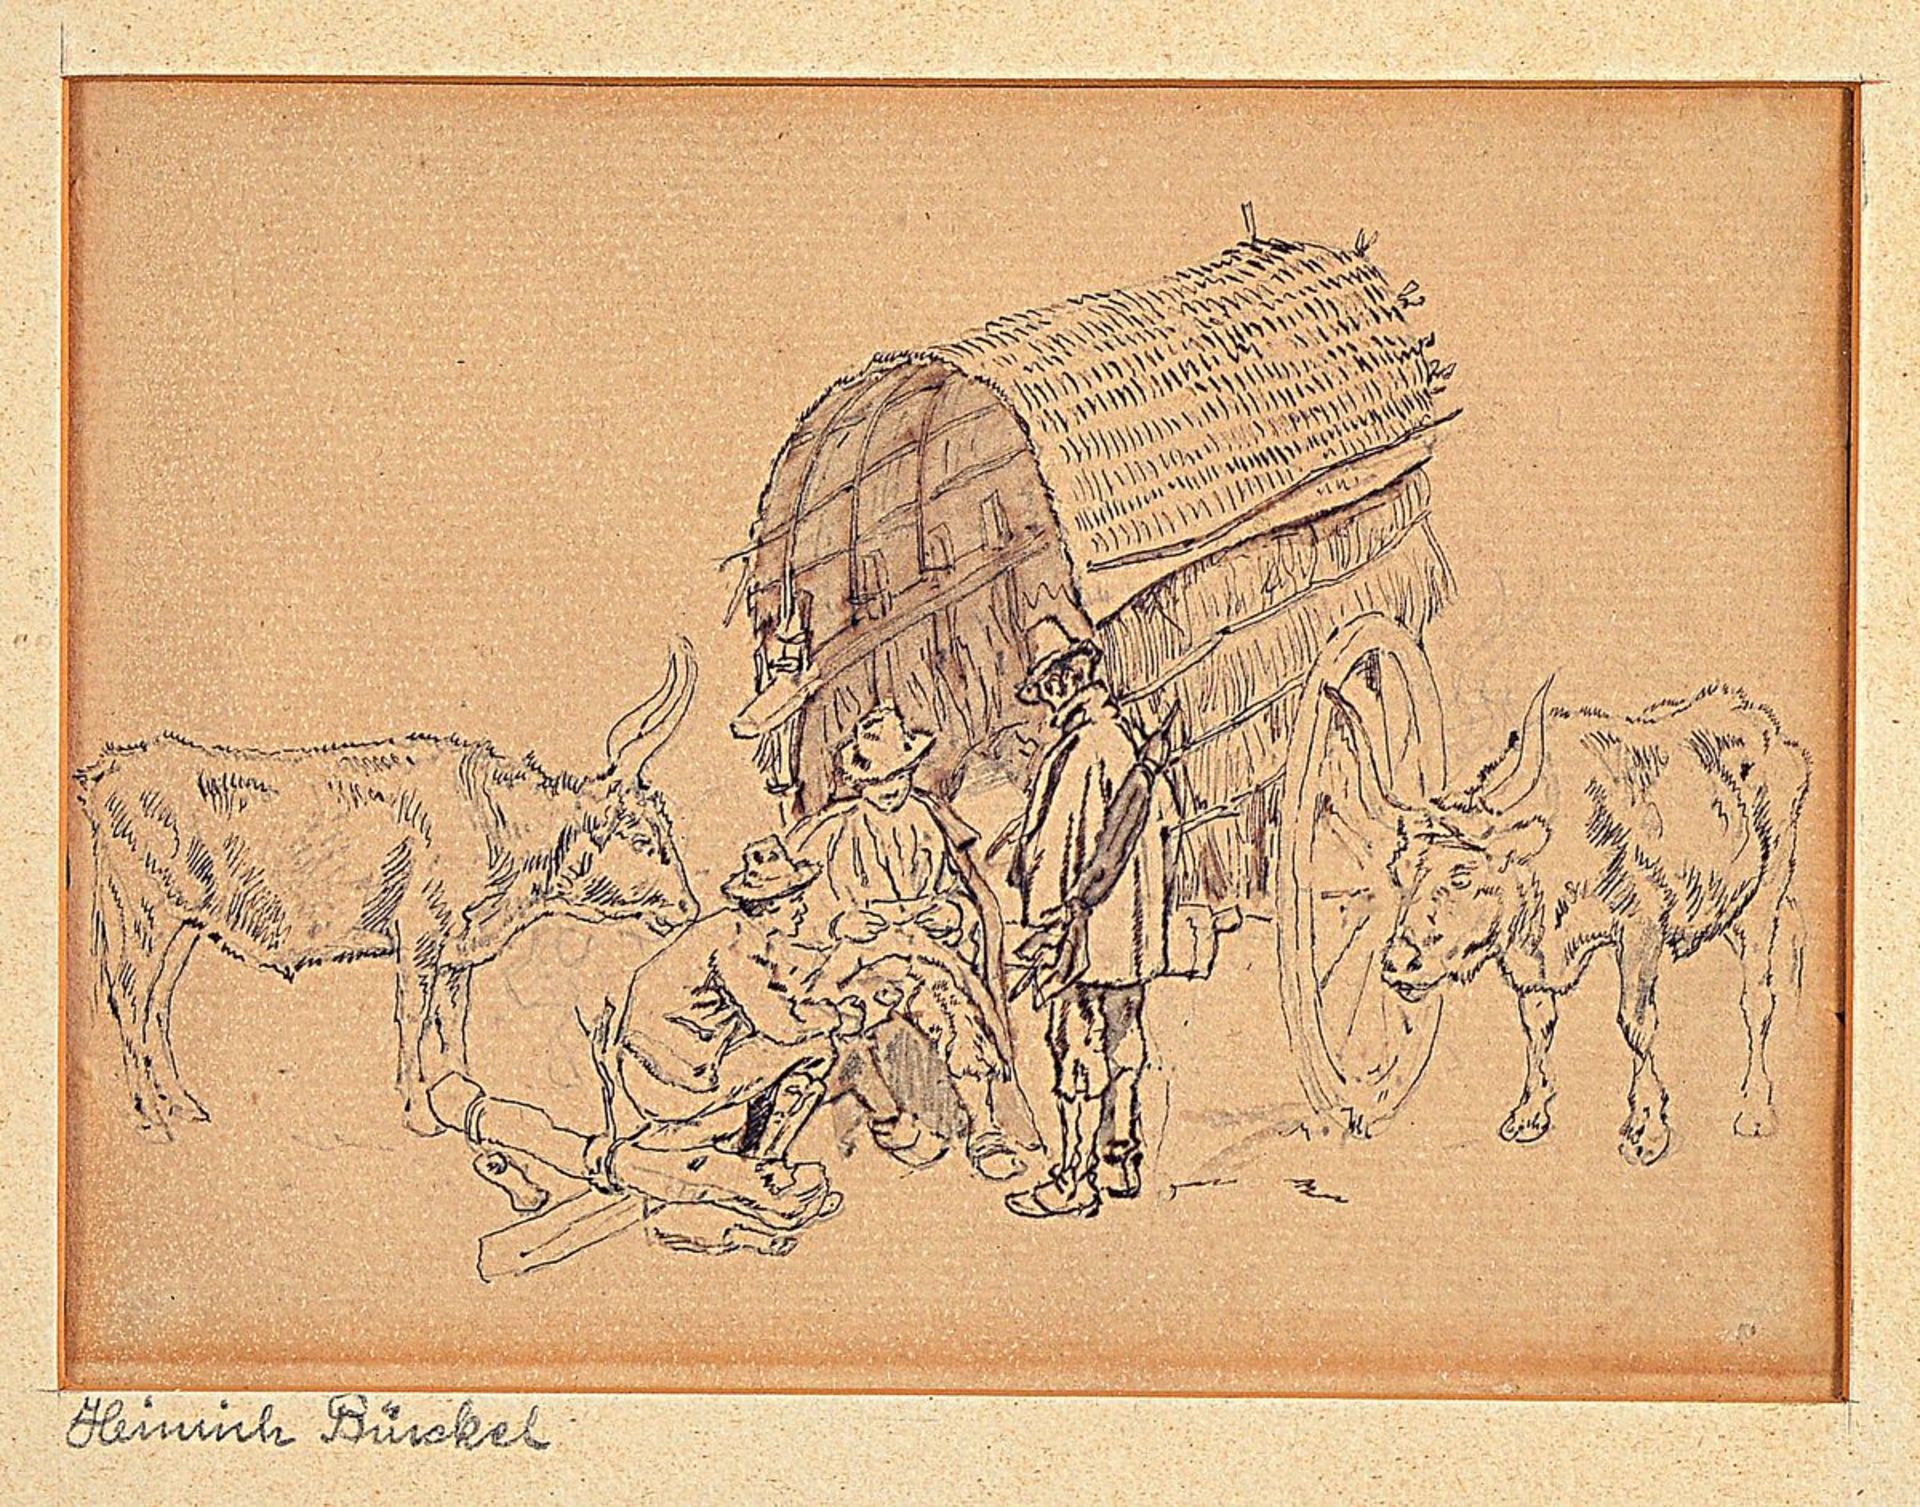 Attribution: Heinrich Bürkel, 1802 Pirmasens -1869 Munich, three men in front of a wagon, left and